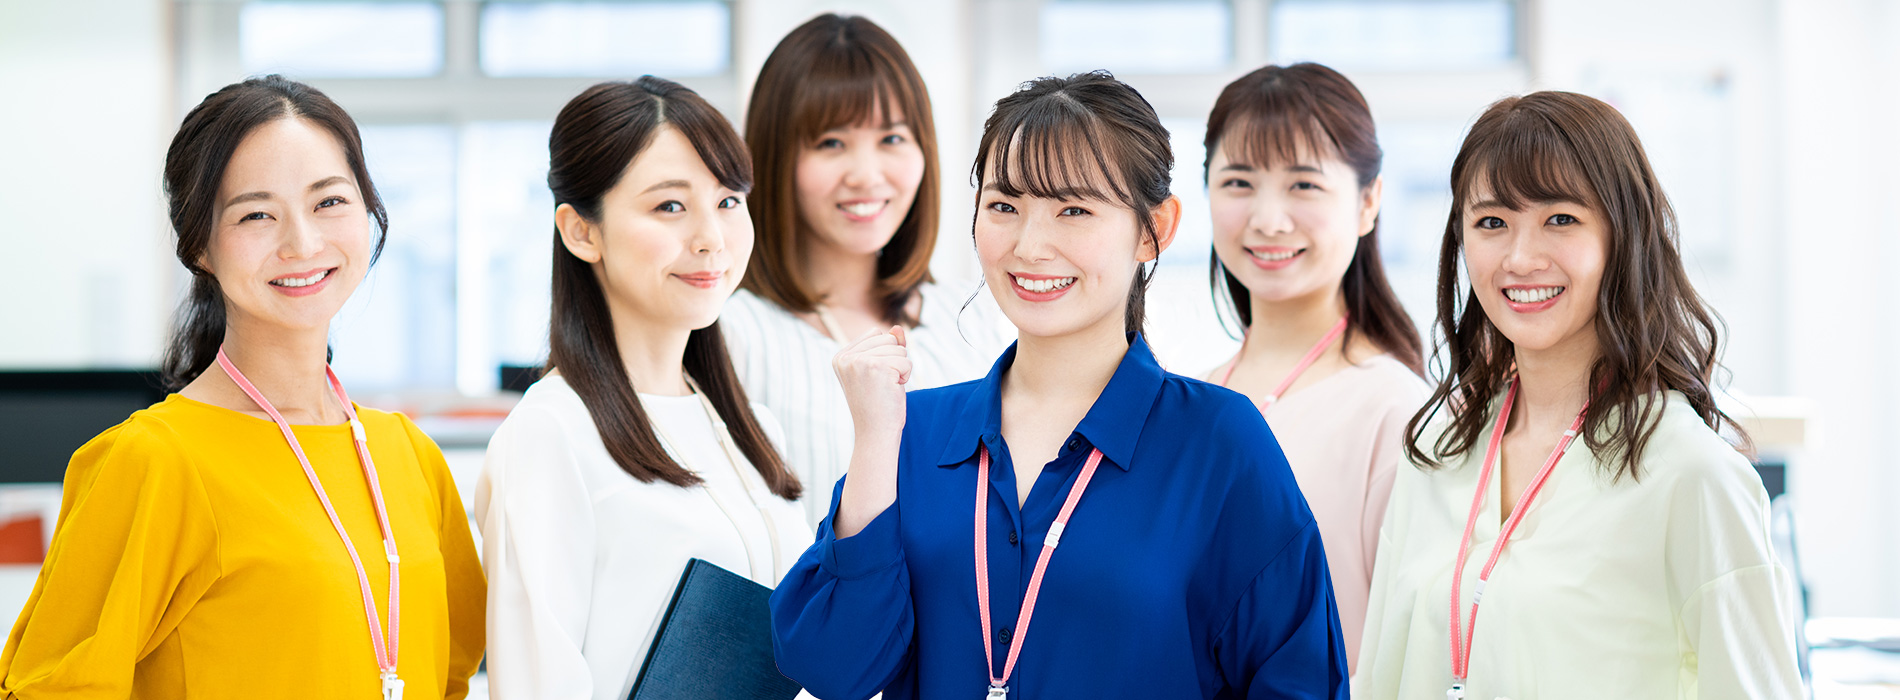 玉居子高敏 女性が多い職場 安定化 活性化コンサルタント